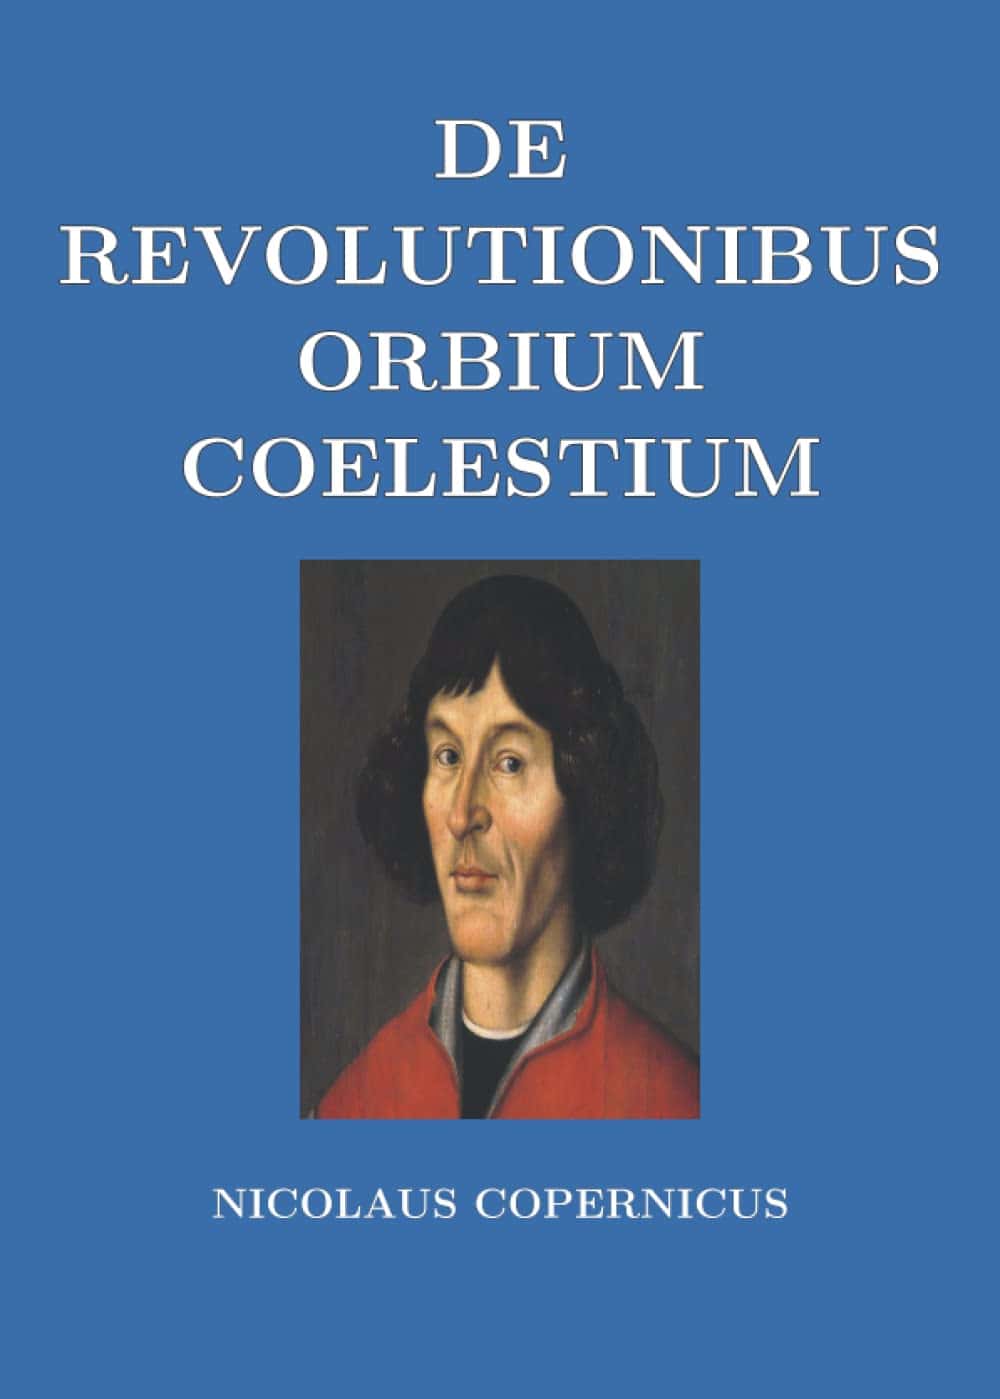 De Revolutionibus Orbium Coelestium (On the Revolutions of Heavenly Spheres) by Nicolaus Copernicus (1543)